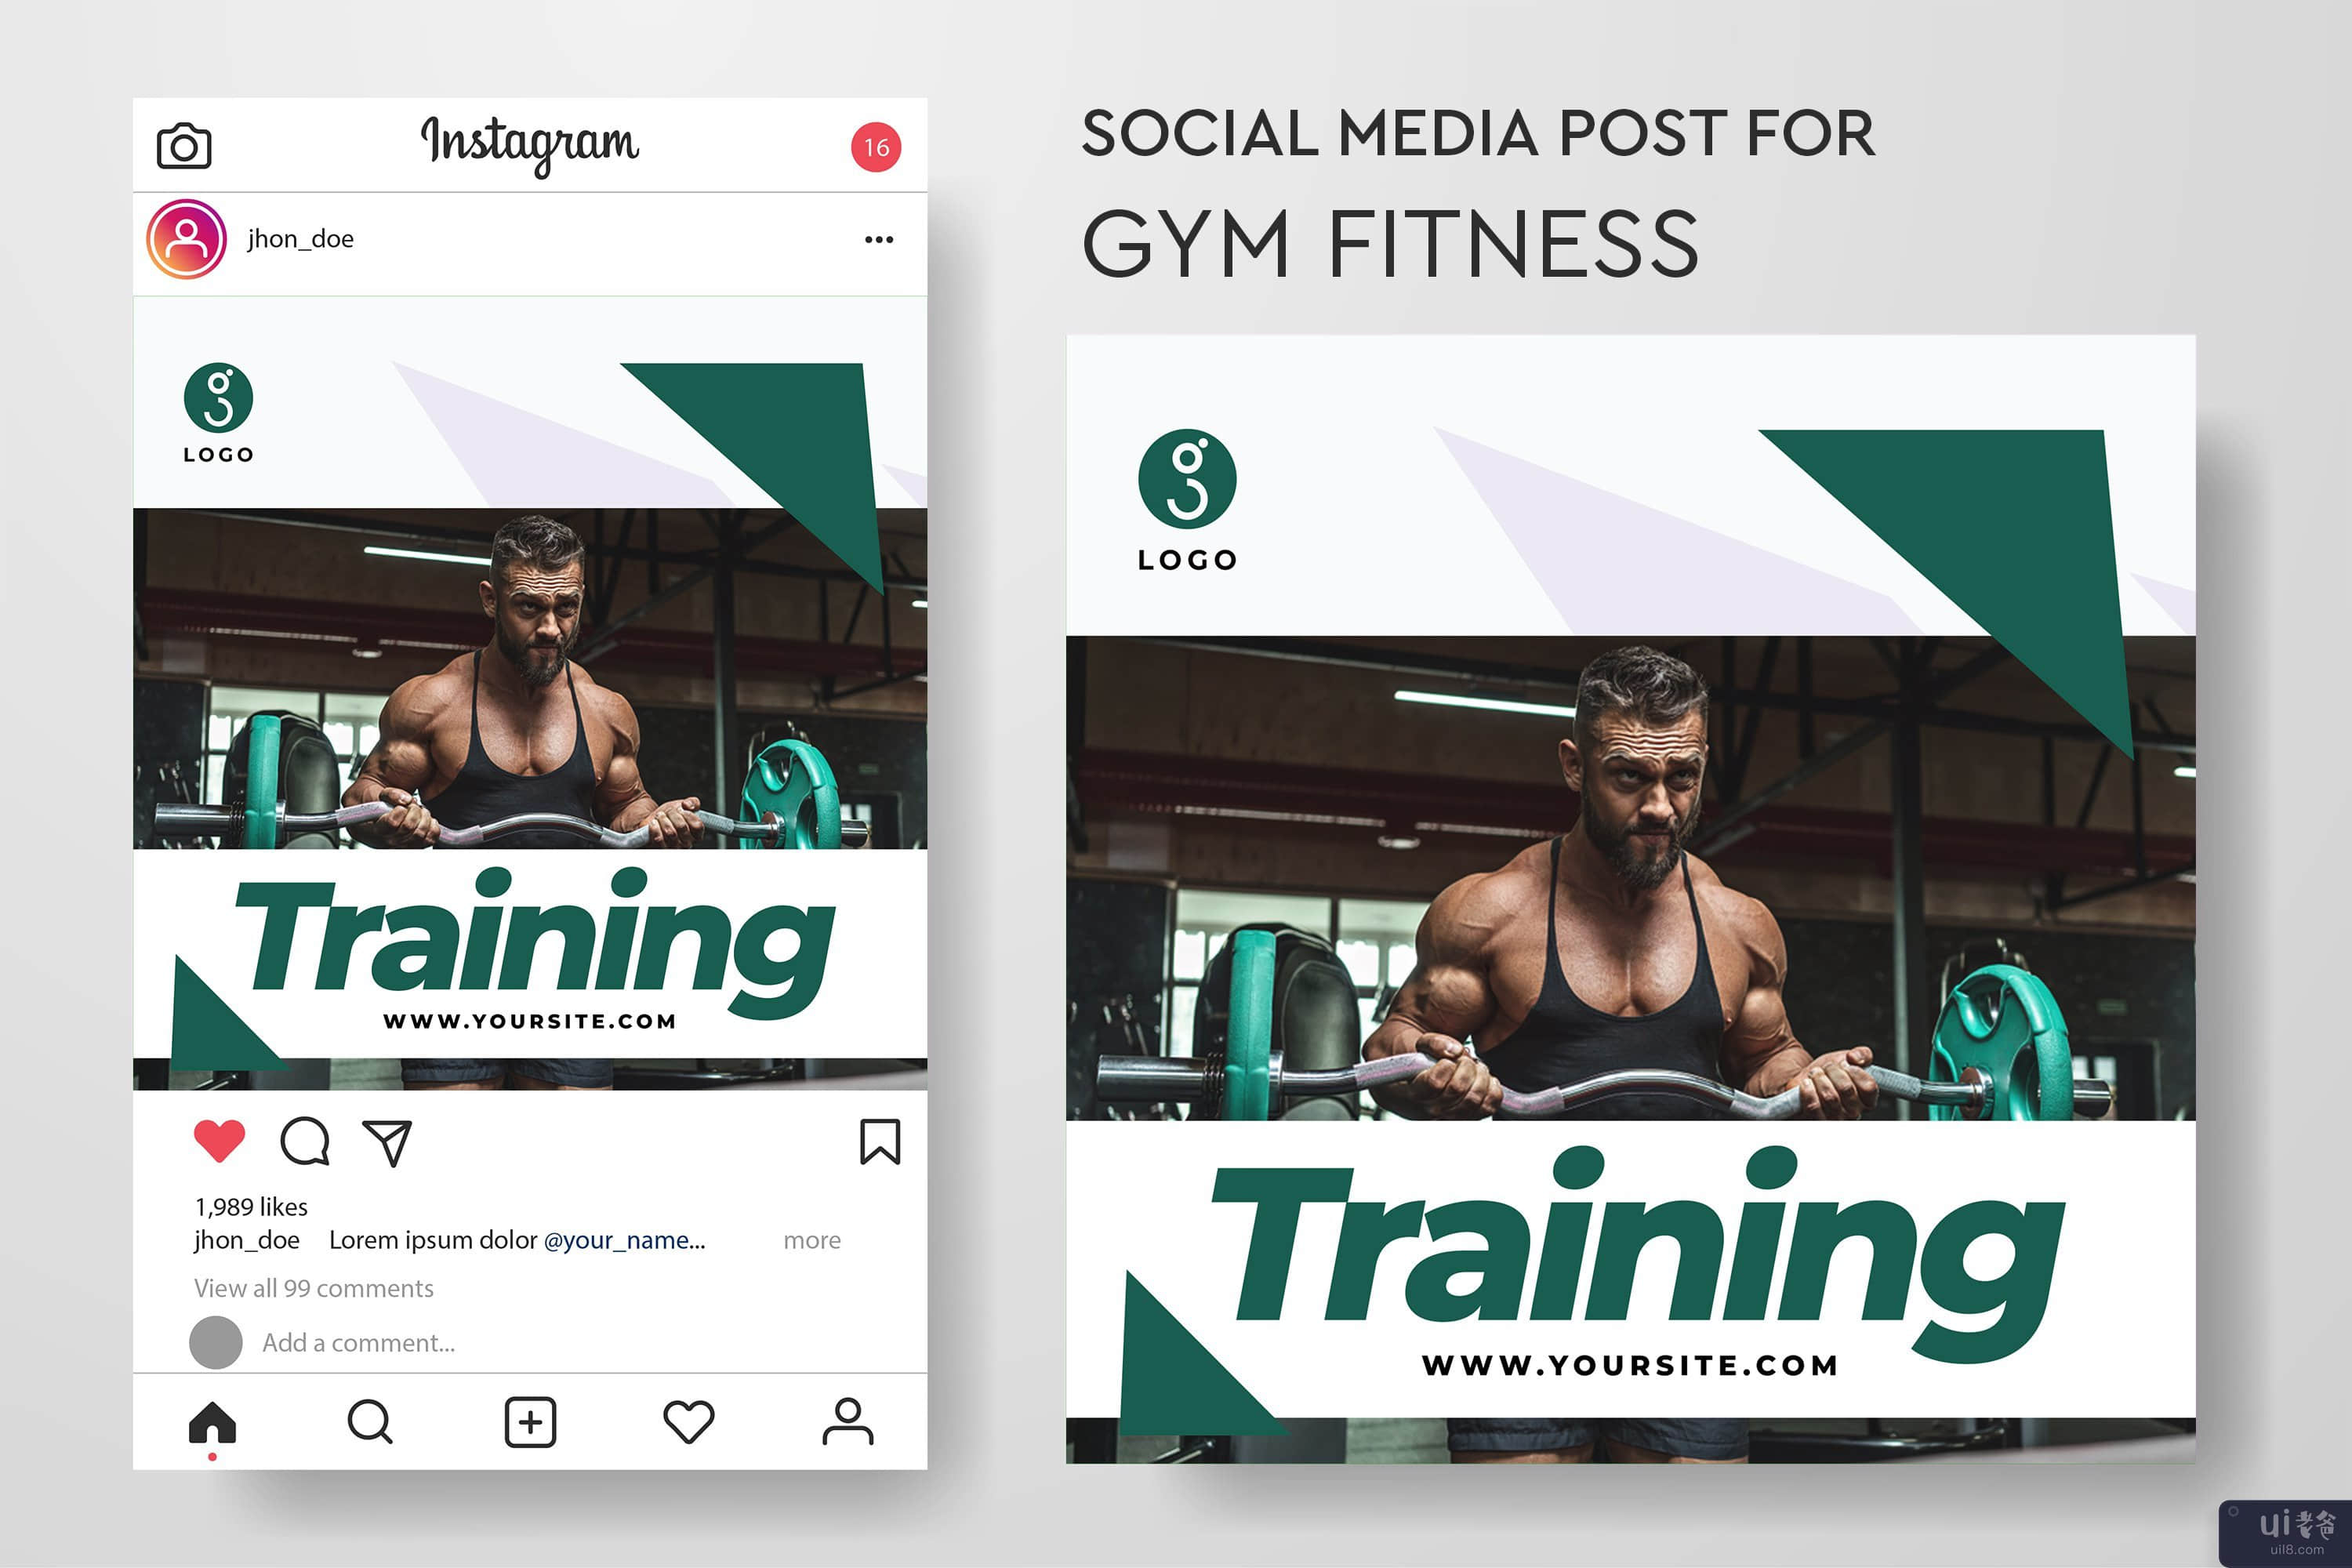 健身房健身的社交媒体帖子模板集合(Social media post template collection for gym fitness)插图3